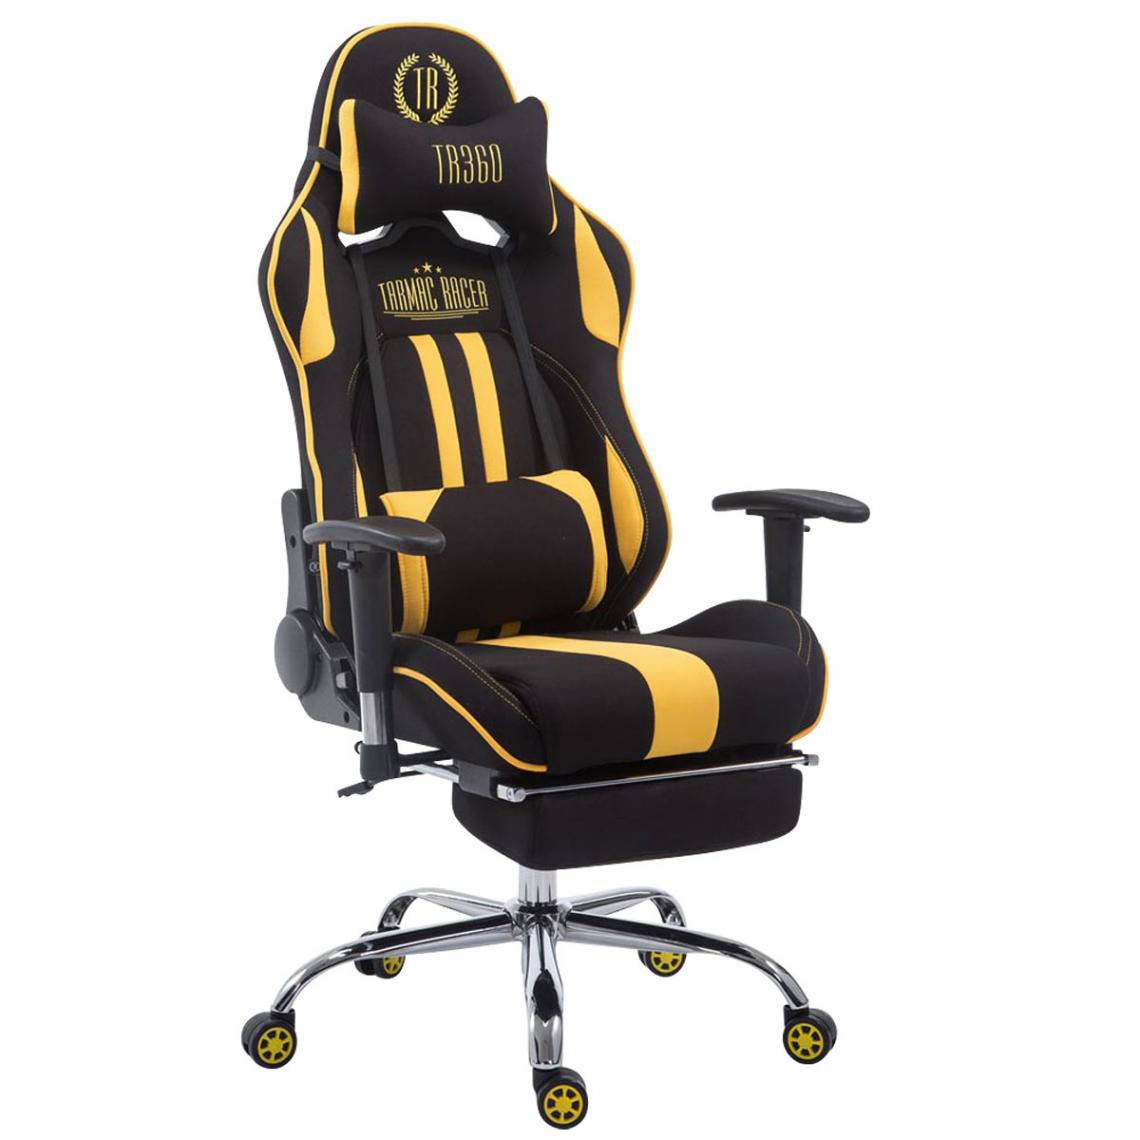 Icaverne - Superbe Chaise de bureau selection Luanda tissu Limit avec repose-pieds couleur noir jaune - Chaises